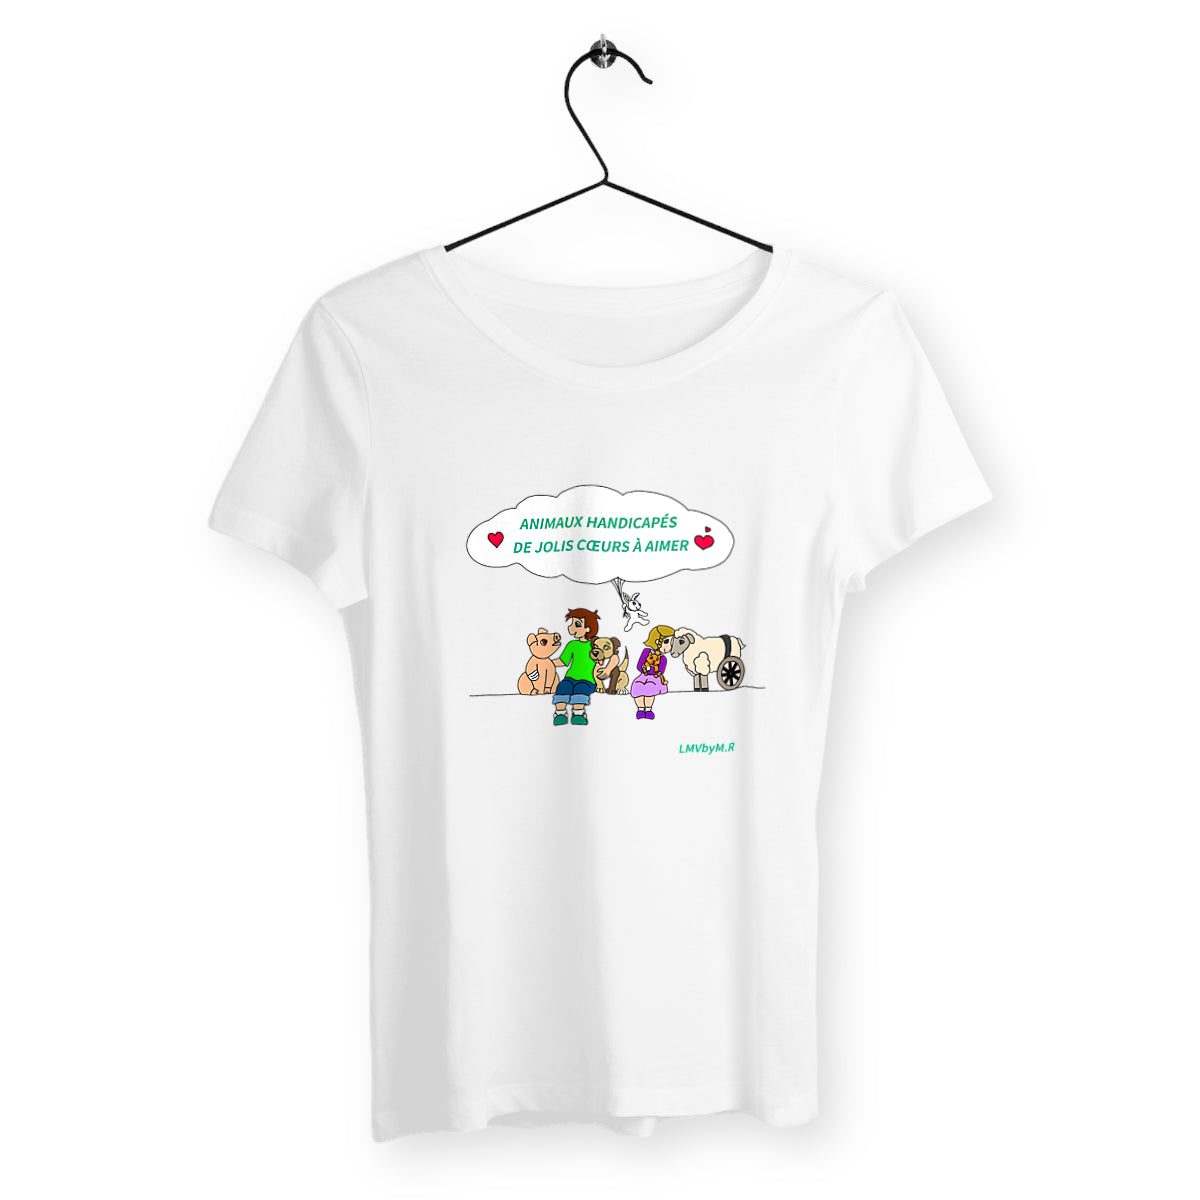 T-shirt FEMME Bio LMV Animaux Handicapés